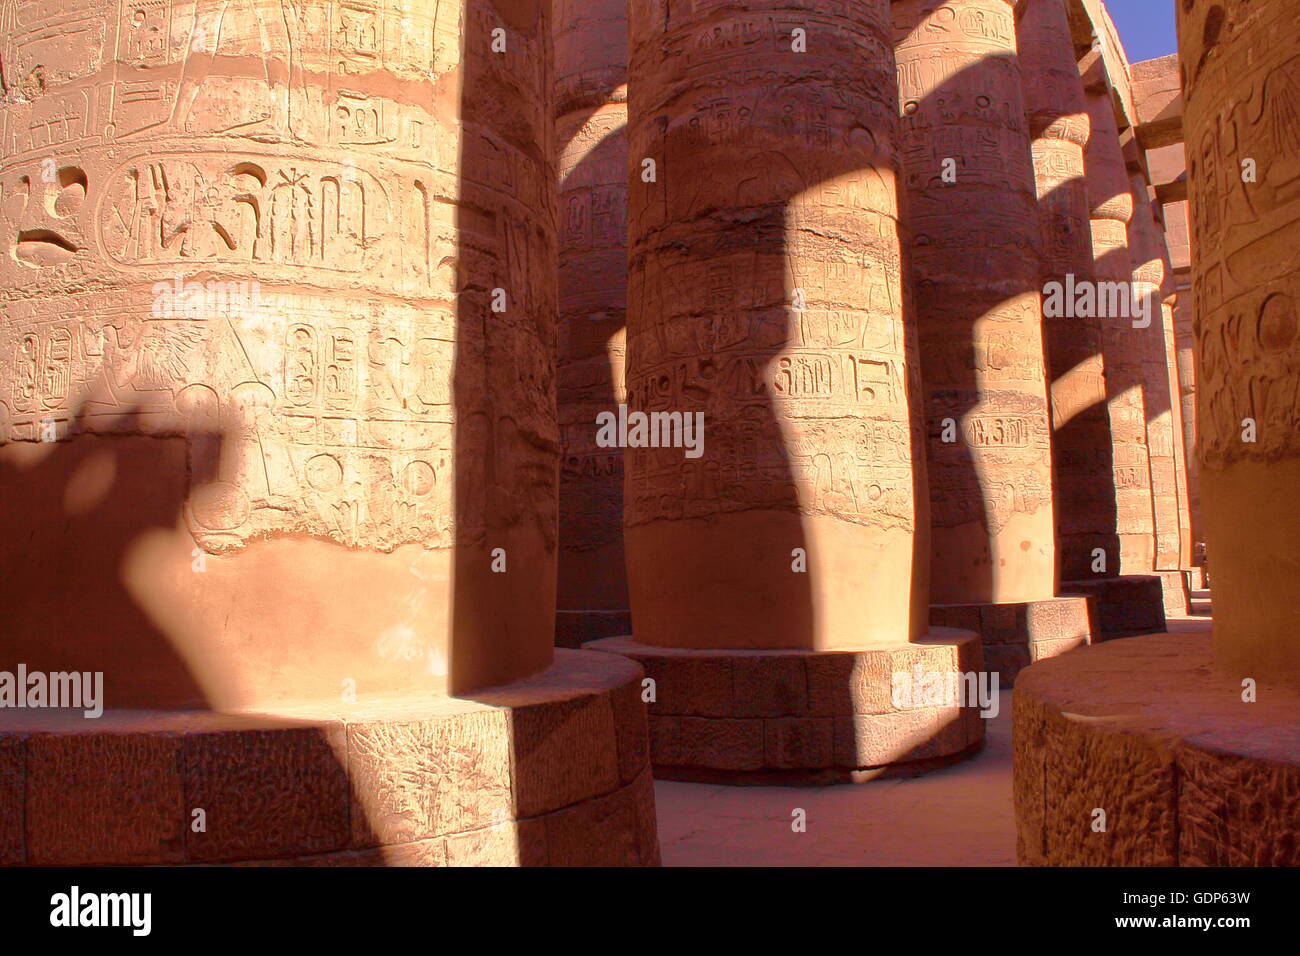 Les colonnes du temple d'Amon, temple de Karnak, Louxor, Egypte Banque D'Images